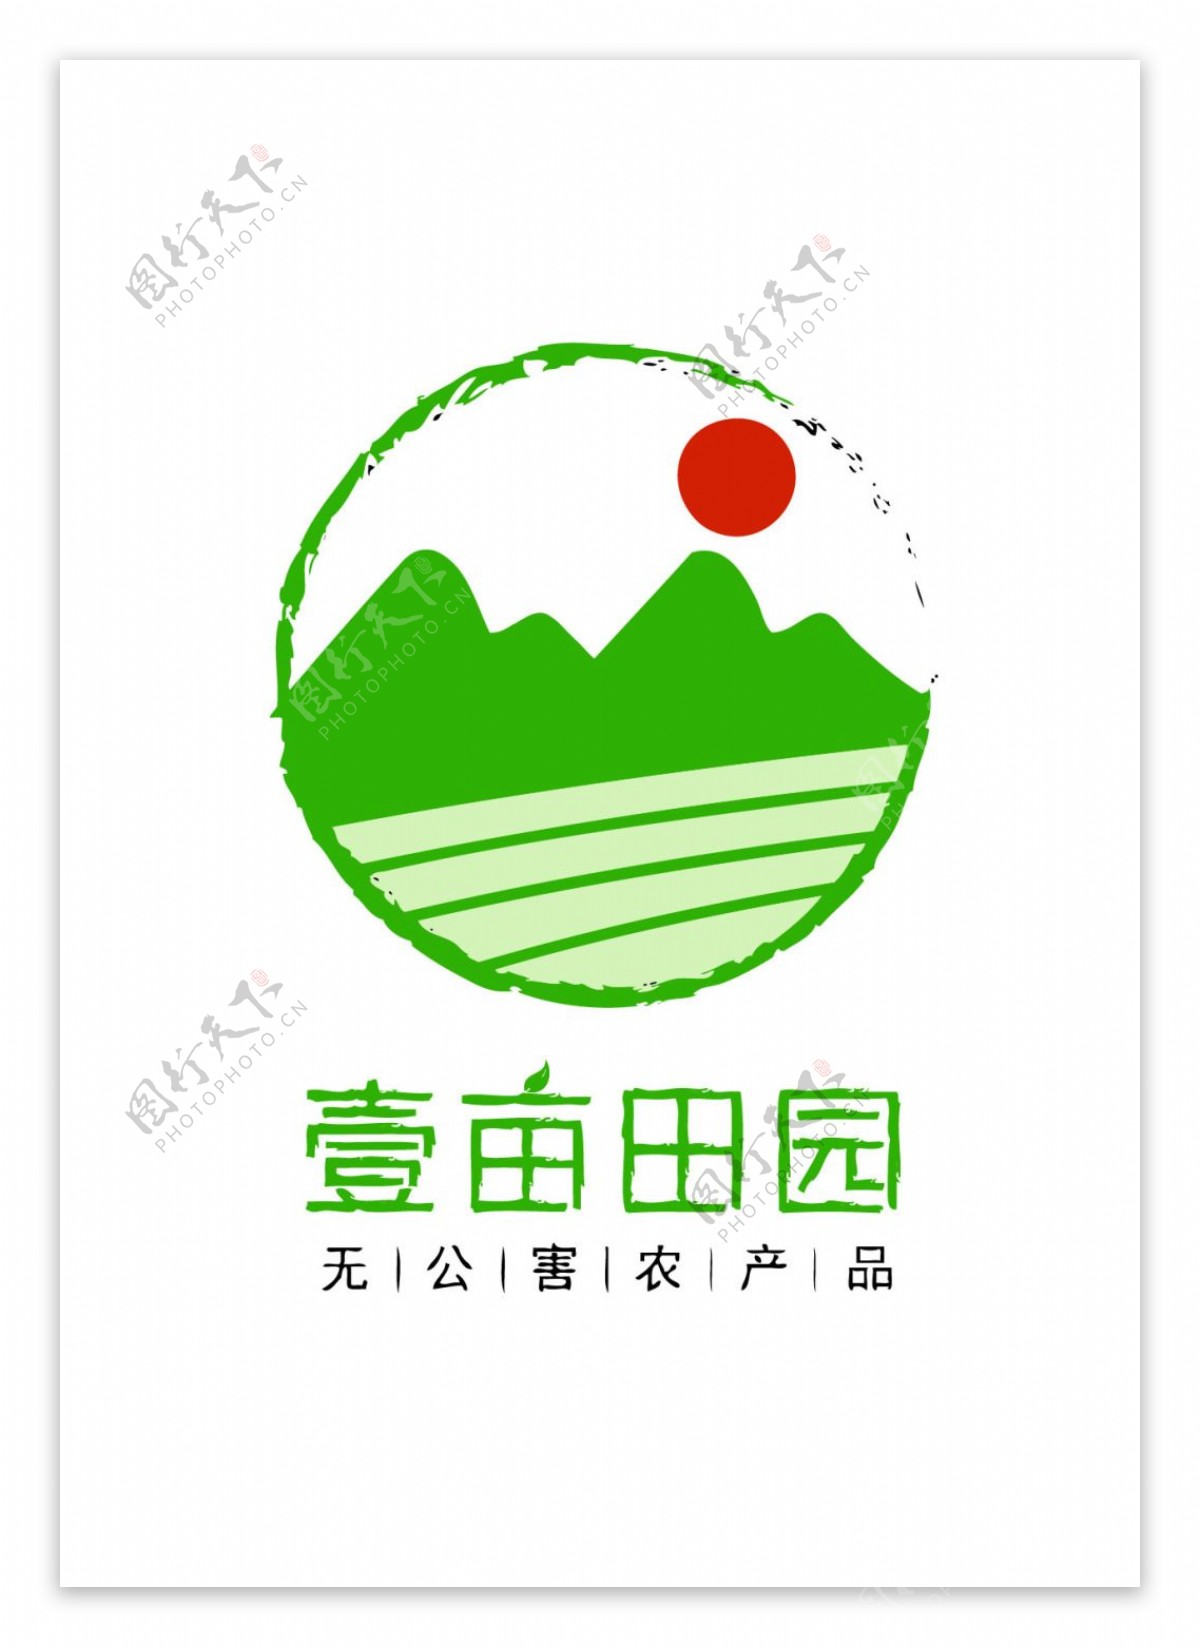 壹亩田园logo